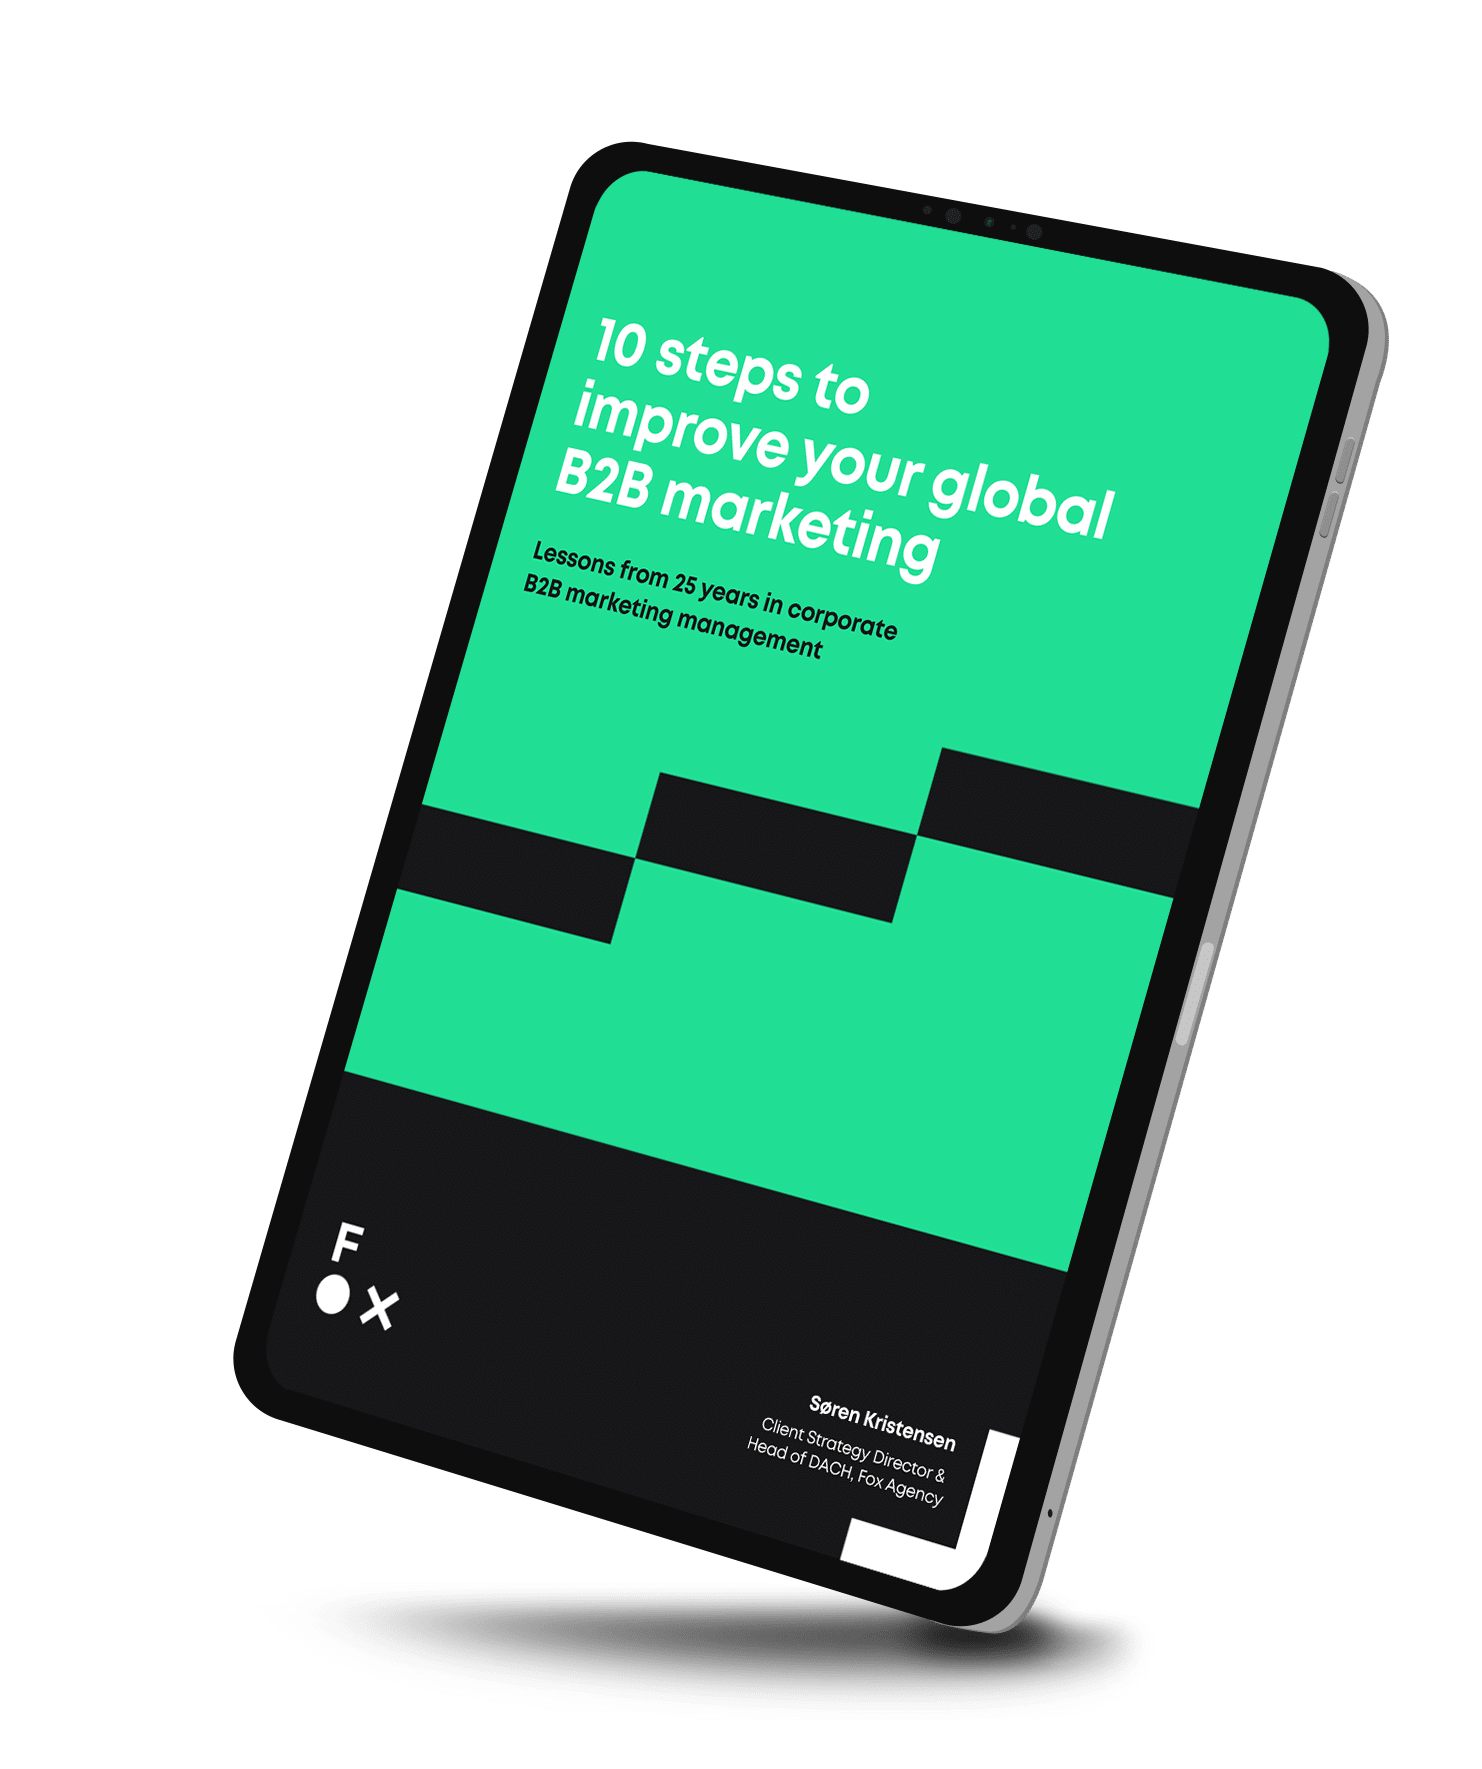 Global B2B Marketing whitepaper cover on phone screen